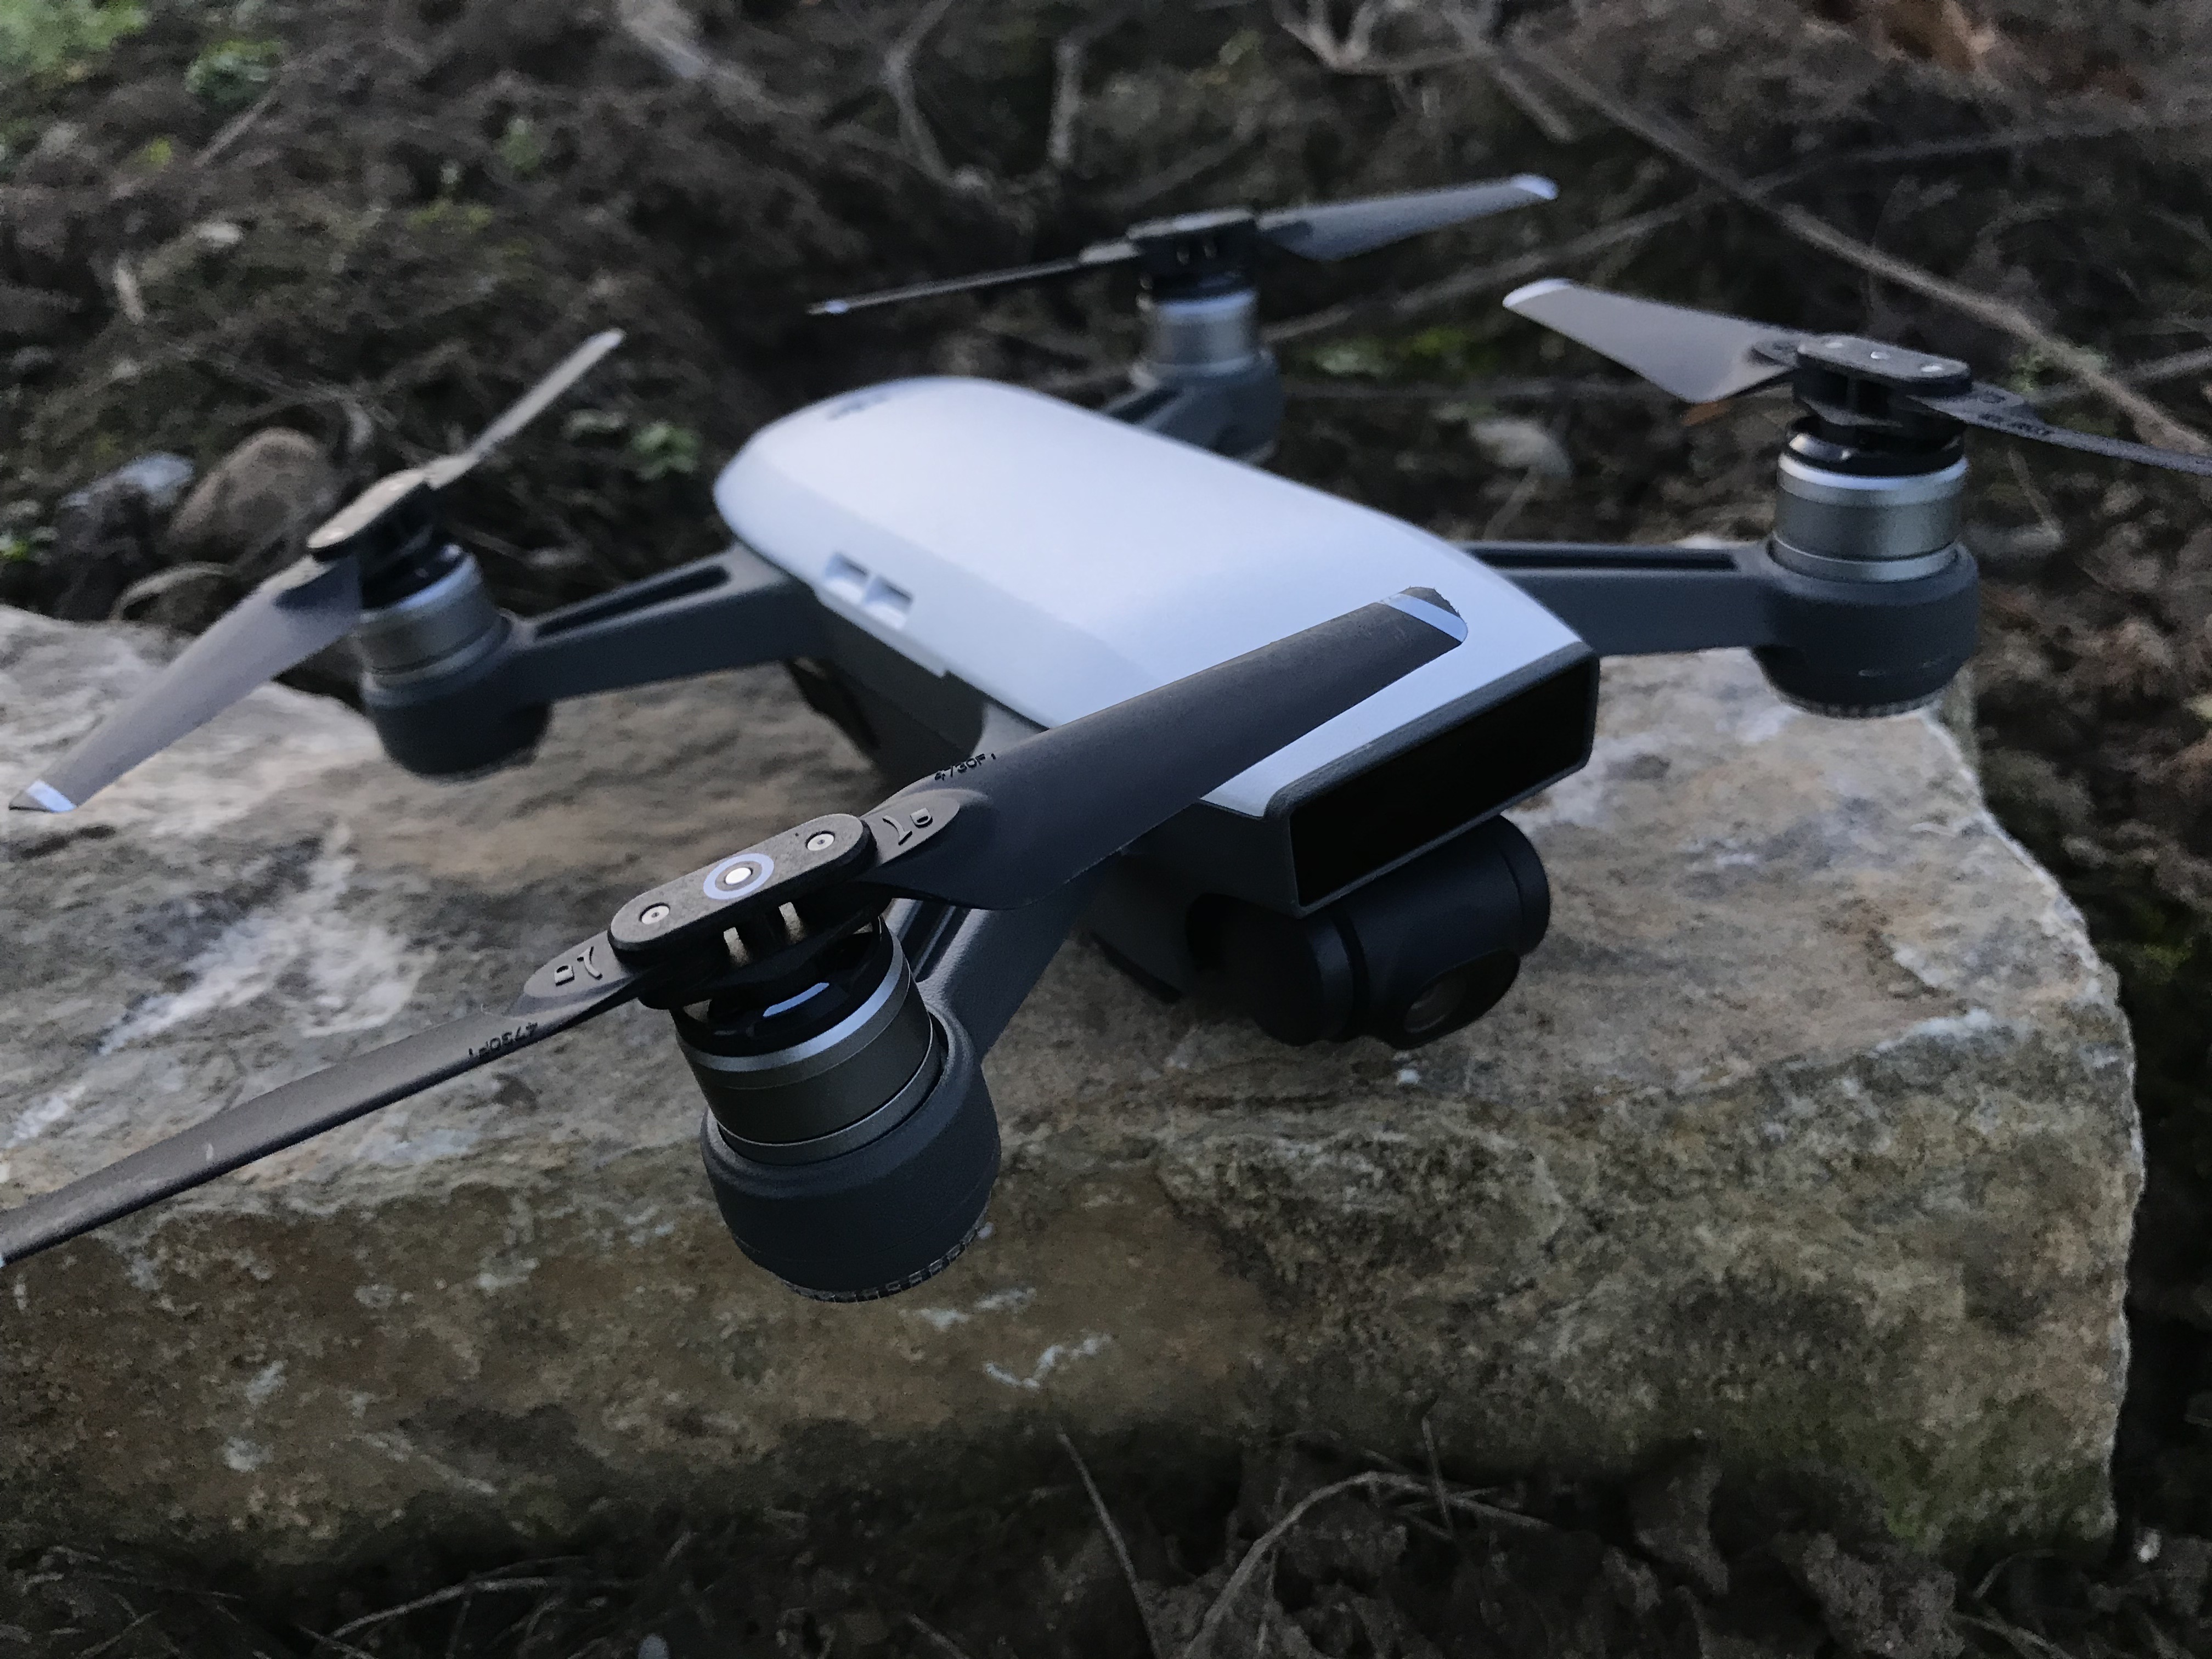 I nostri servizi con l’uso dei droni